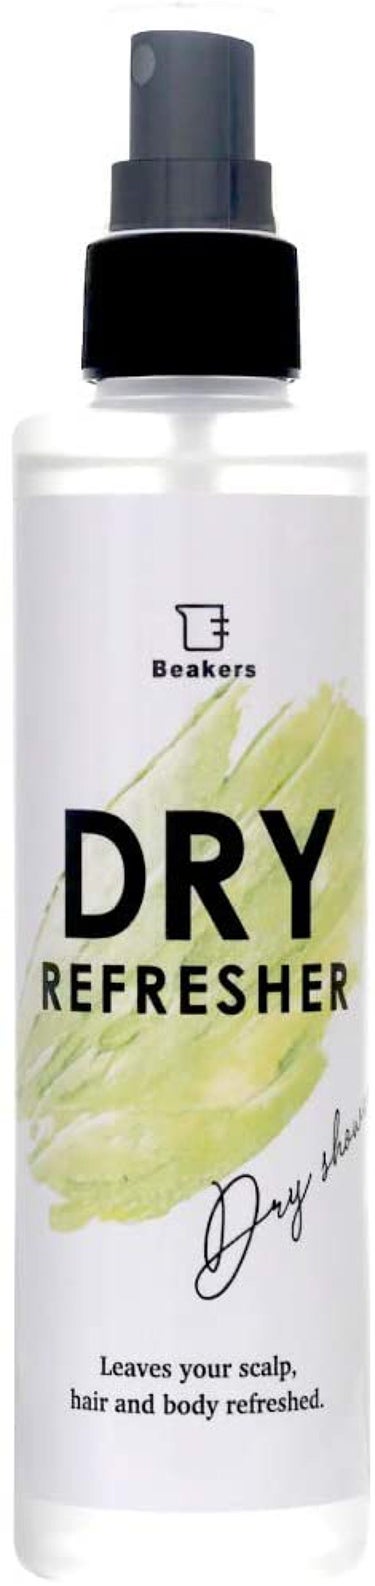 Beakers ドライリフレッシャー フレッシュフローラルの香り